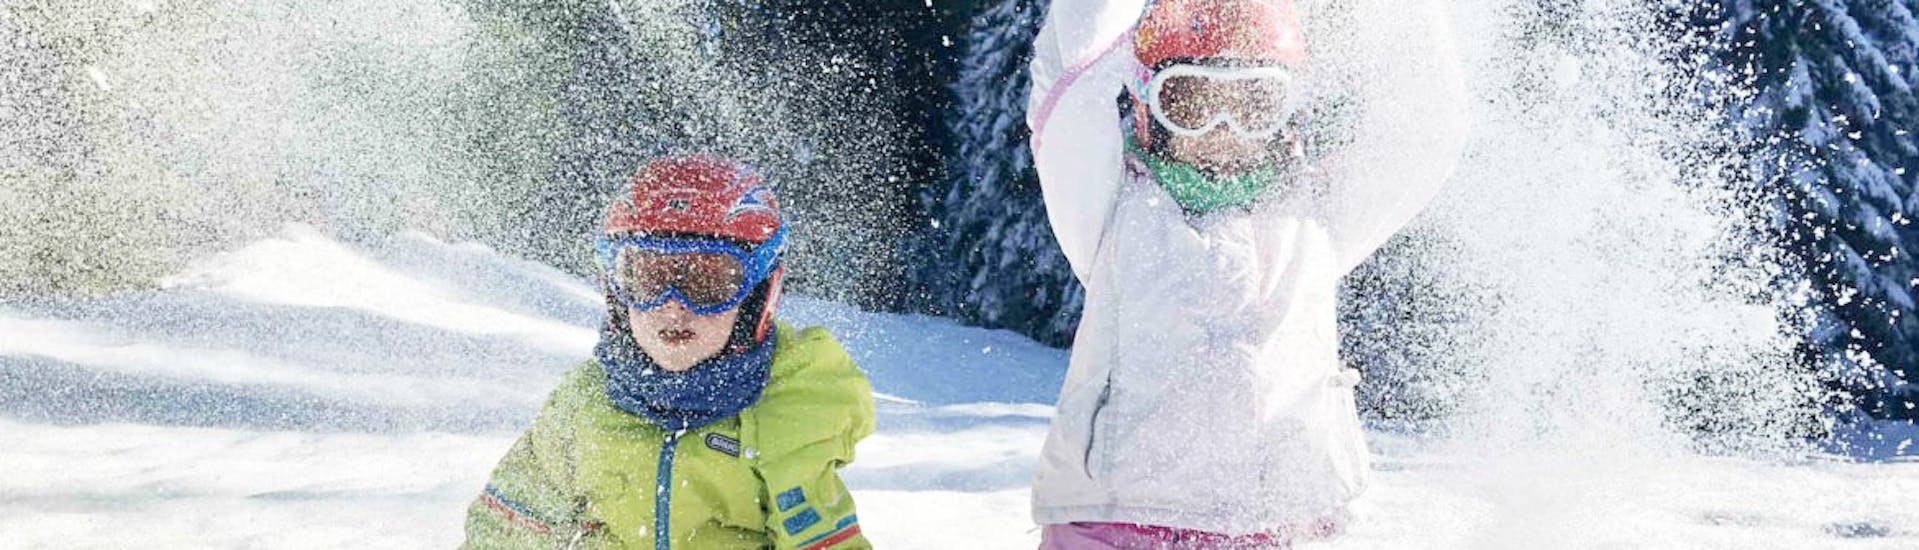 Skilessen voor kinderen vanaf 5 jaar - ervaren.